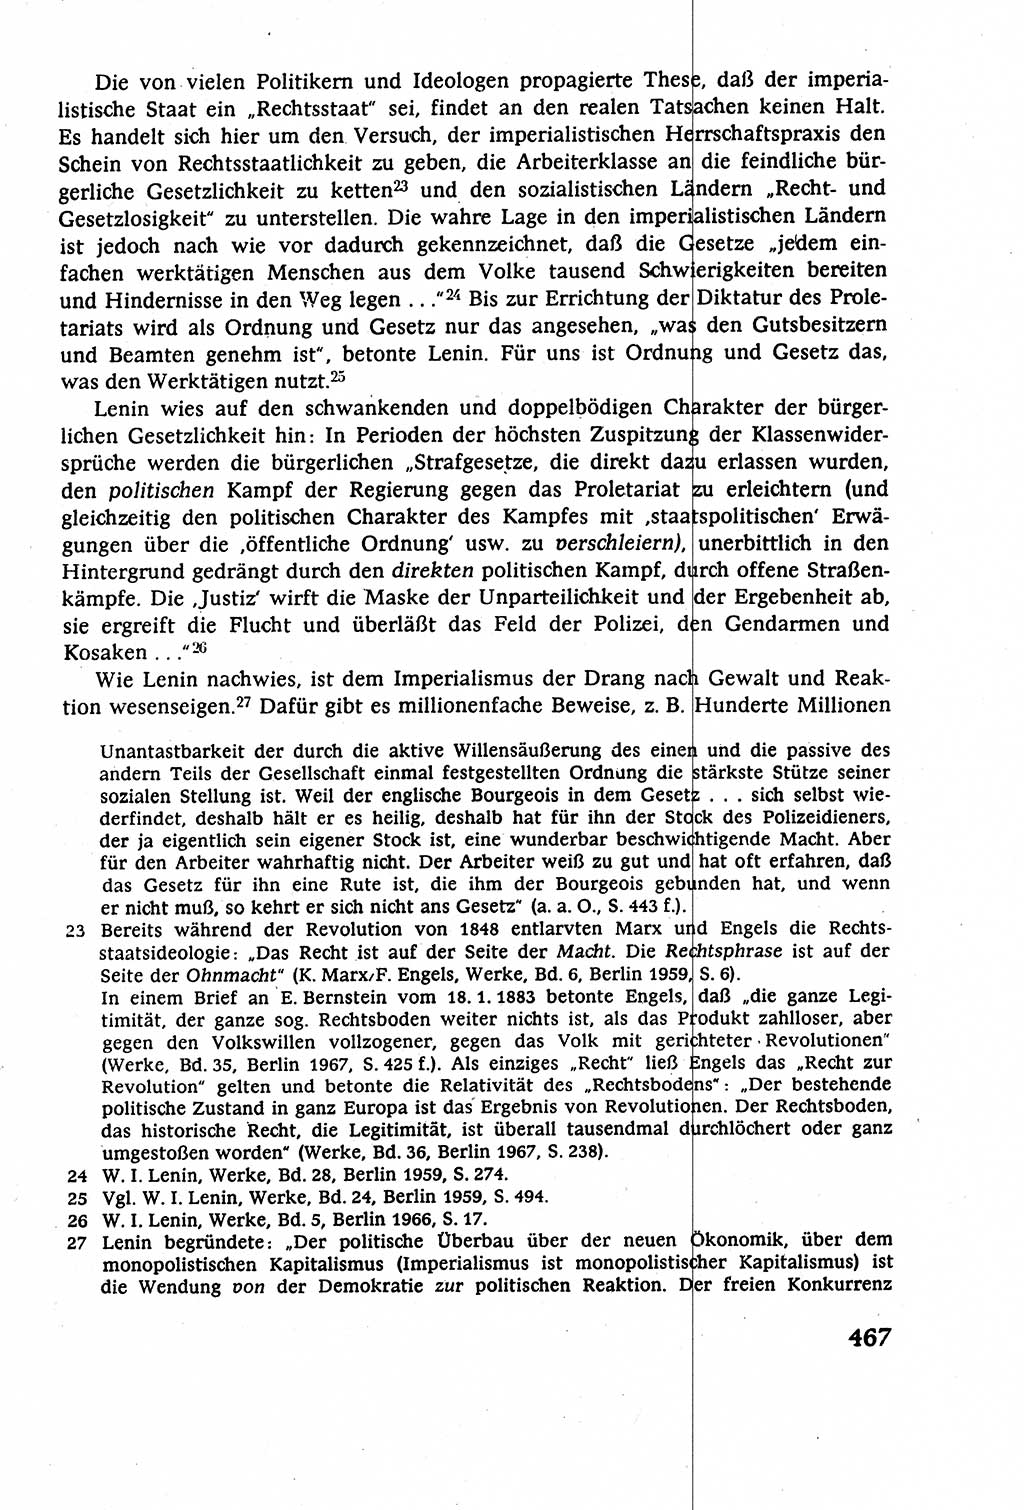 Staatsrecht der DDR (Deutsche Demokratische Republik), Lehrbuch 1977, Seite 467 (St.-R. DDR Lb. 1977, S. 467)